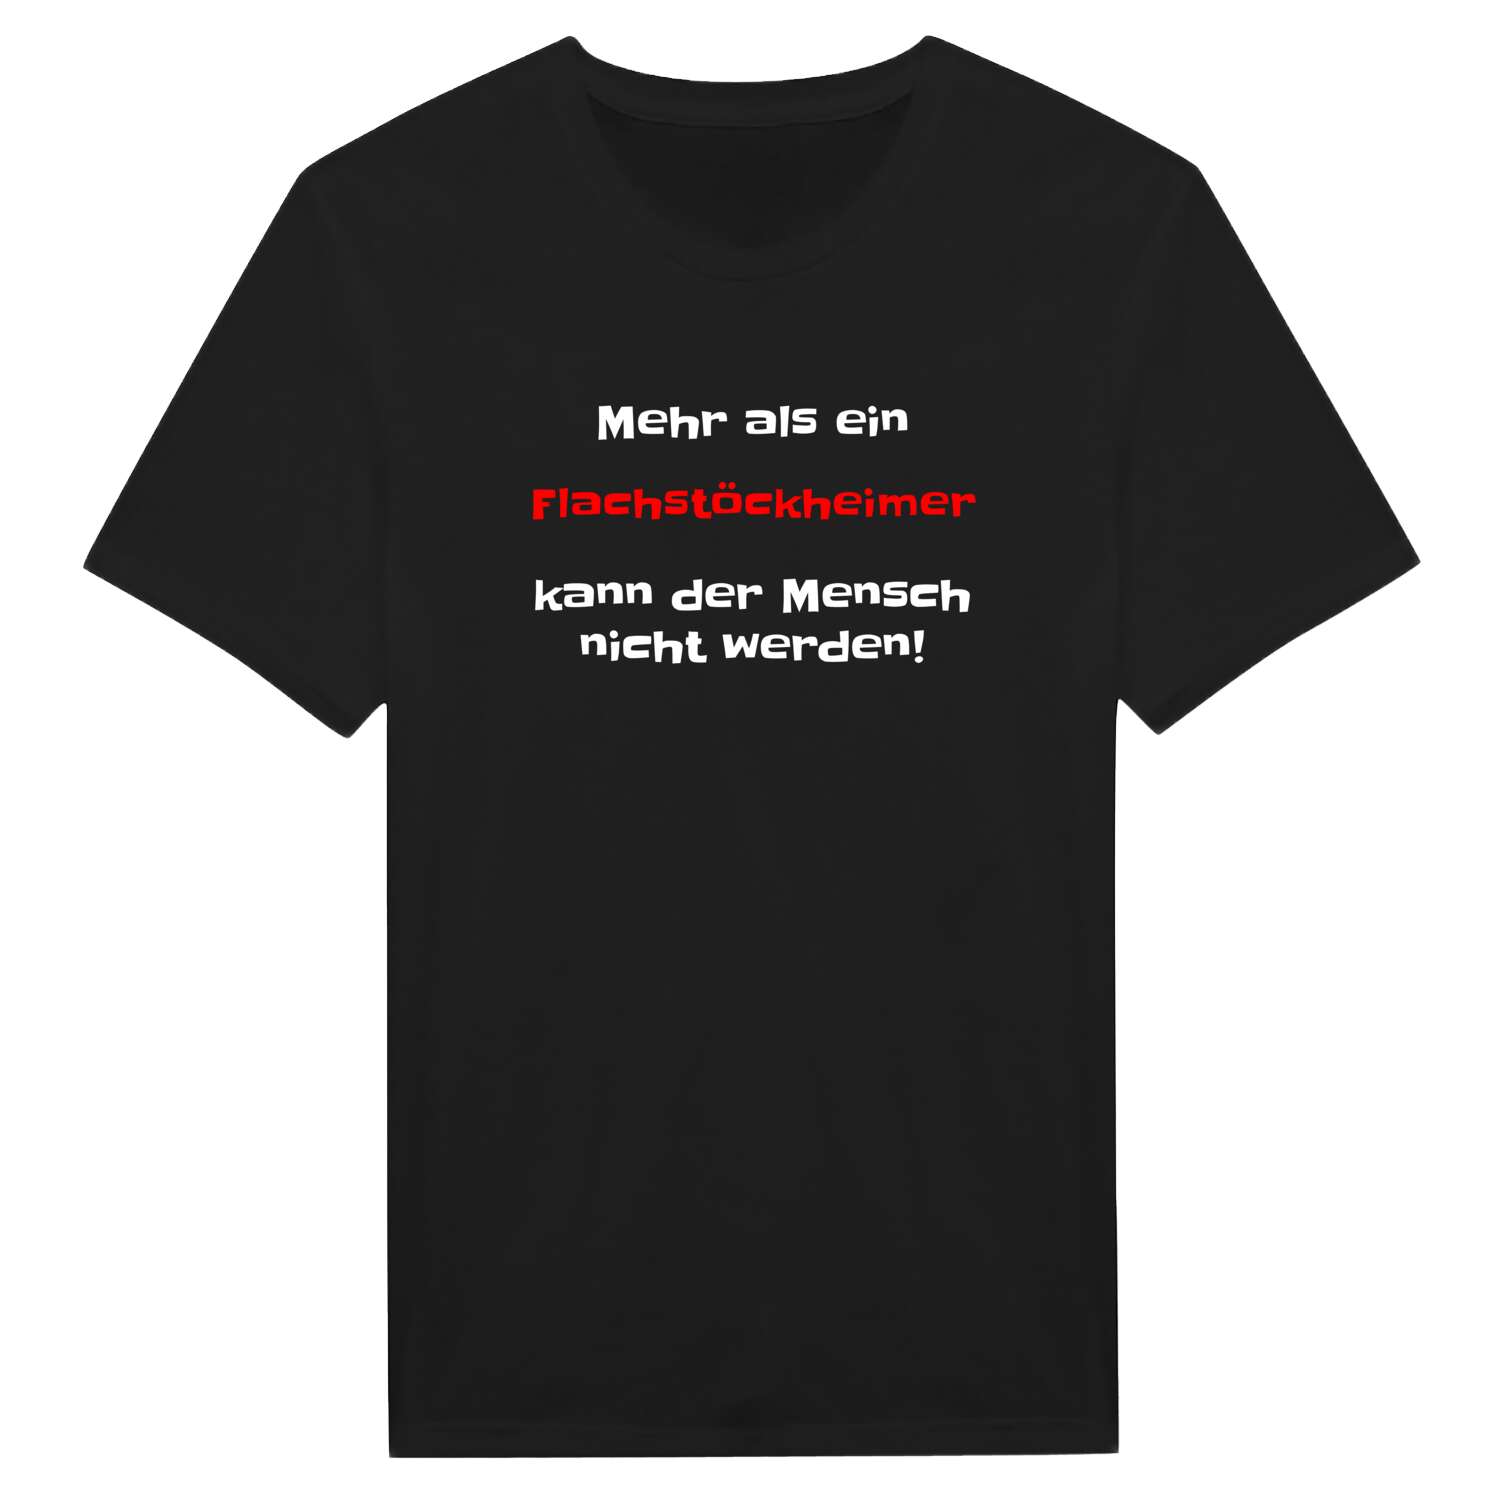 Flachstöckheim T-Shirt »Mehr als ein«